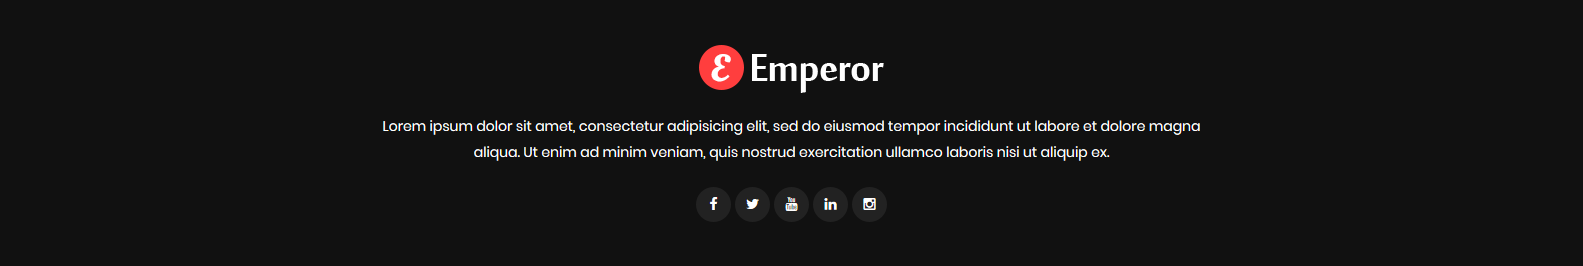 Emperor - Footer Top Frontend